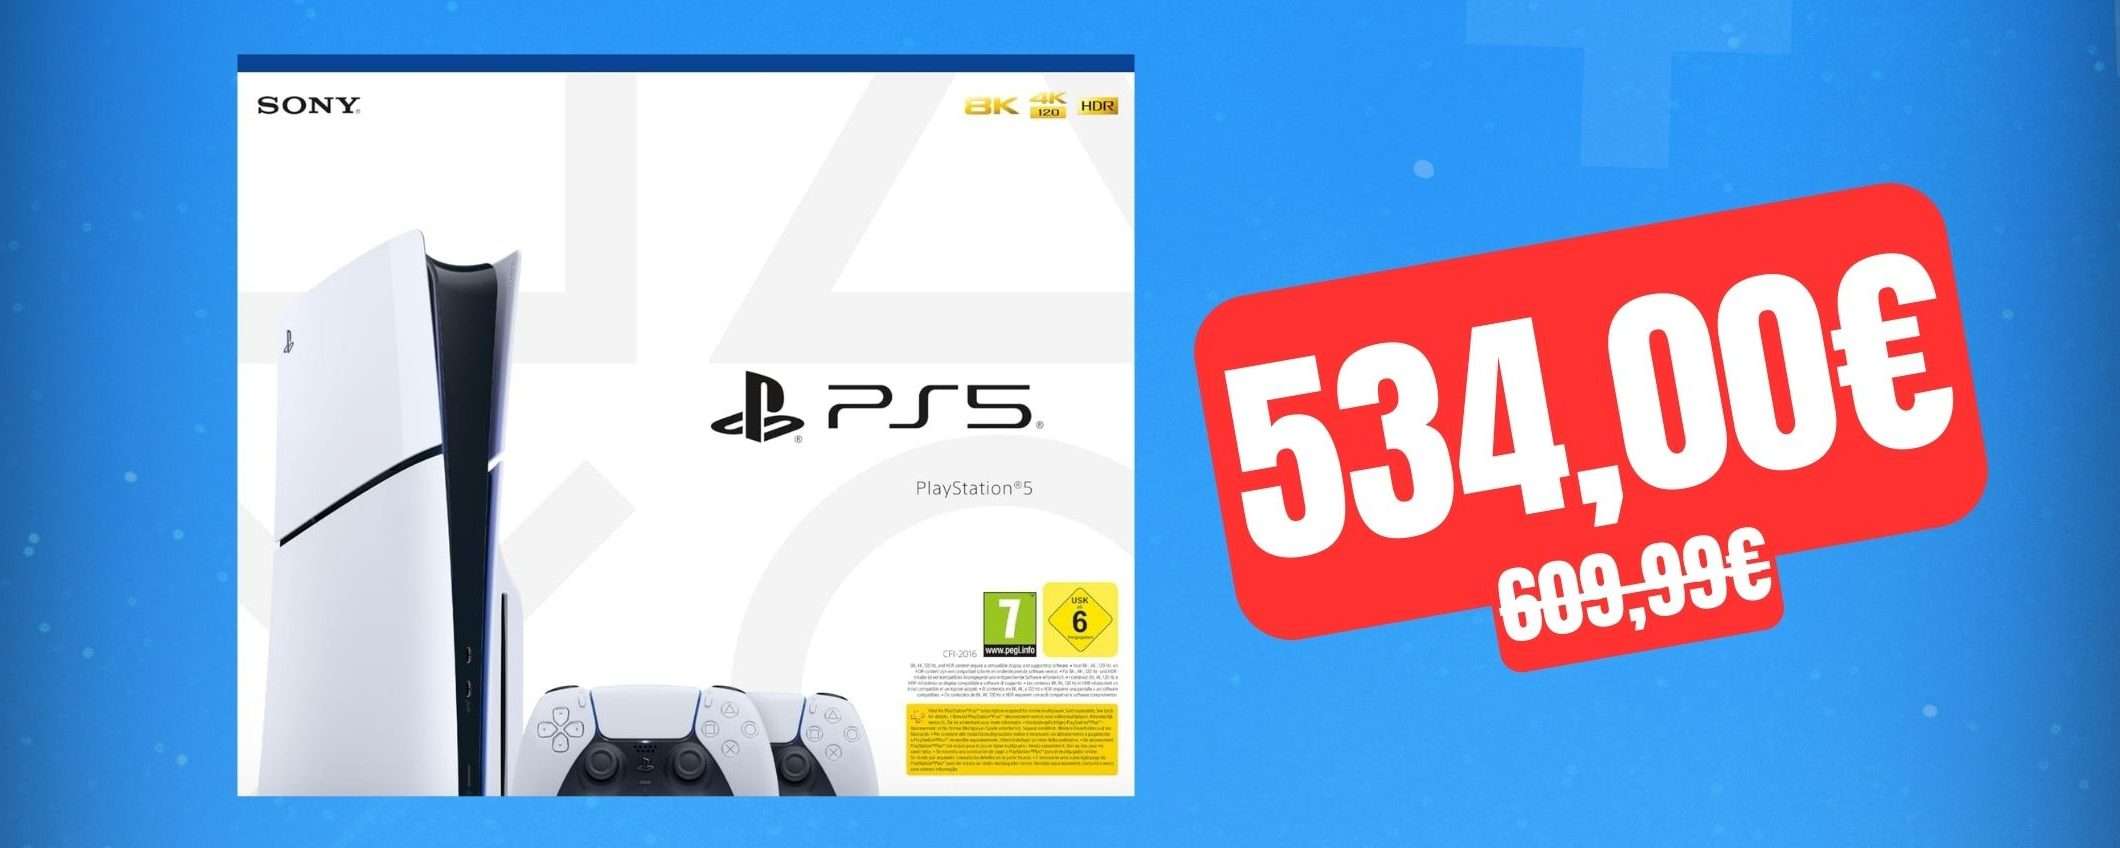 PlayStation 5 Slim: il bundle con 2 DualSense è in SCONTO su Amazon